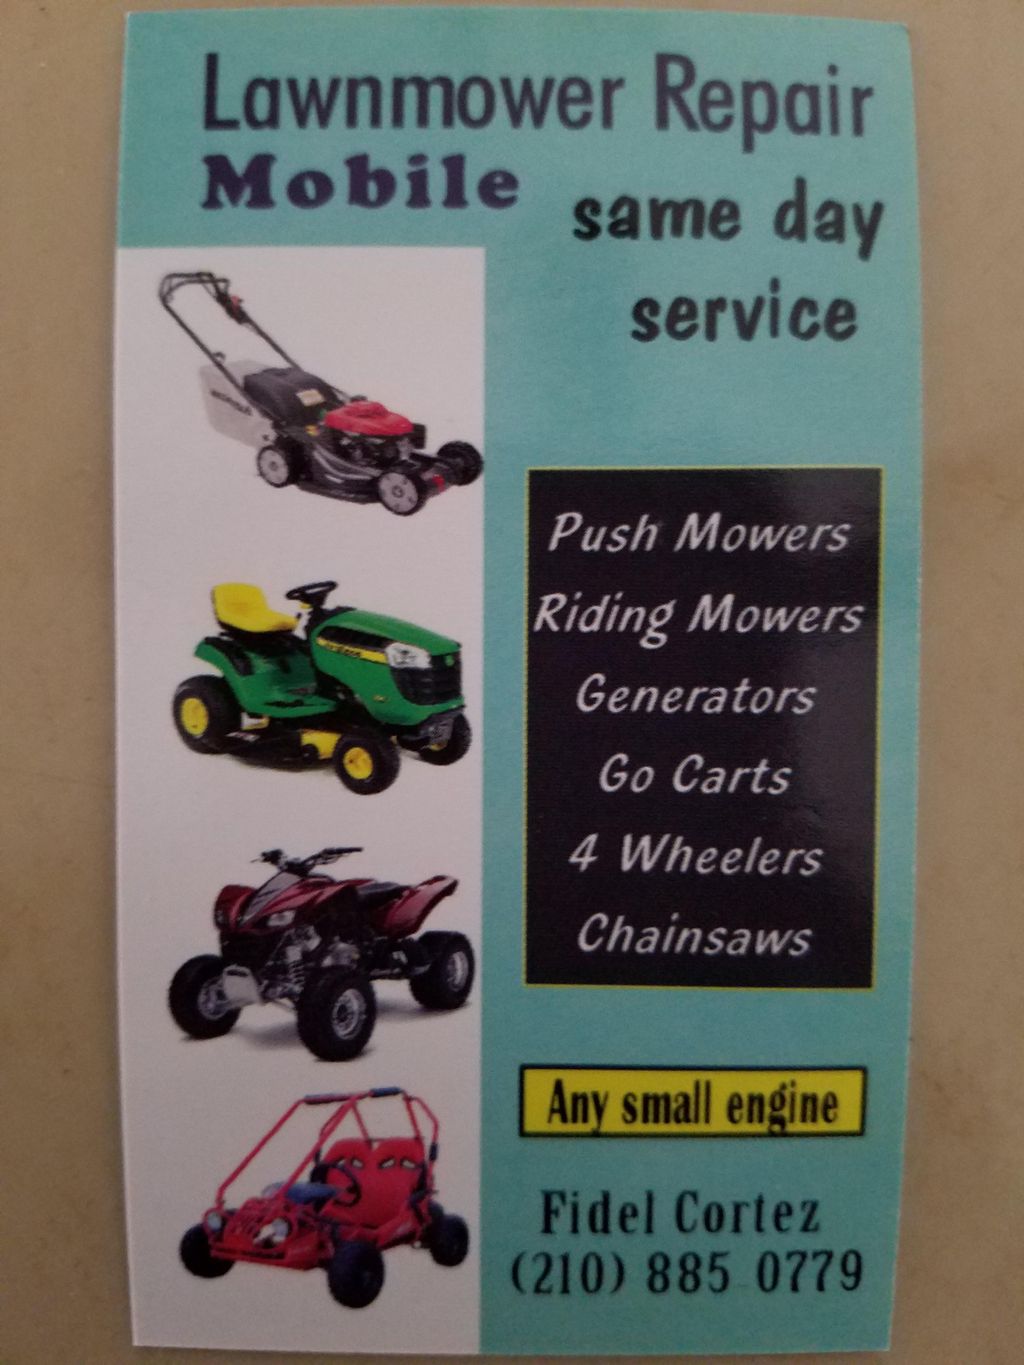 Mobile Lawnmower Repair